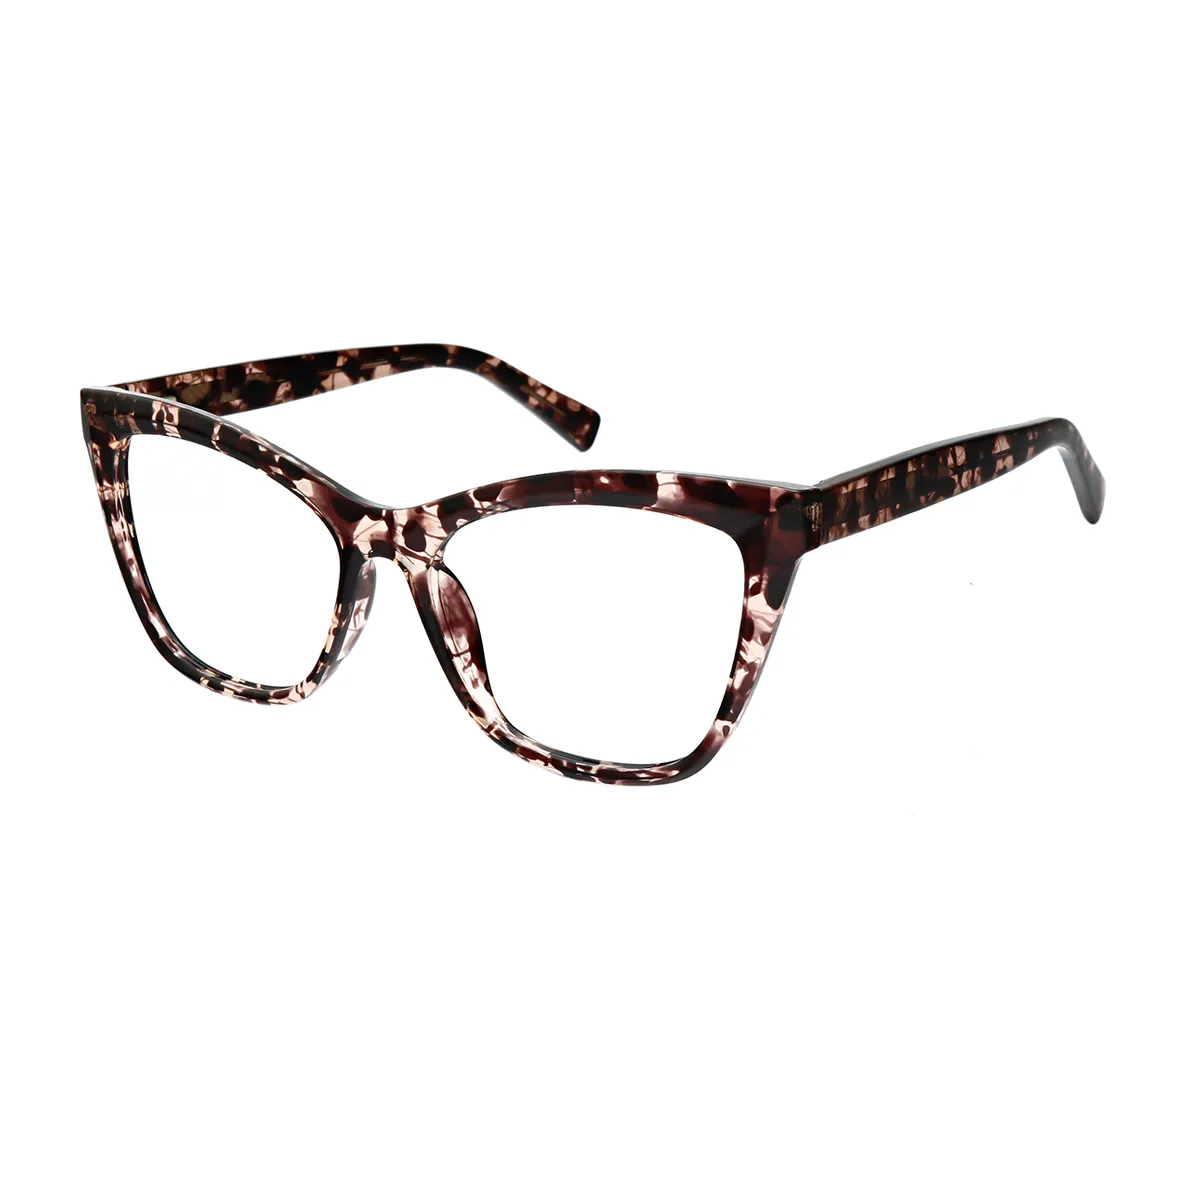 Dame - Cat-eye  Glasses for Women